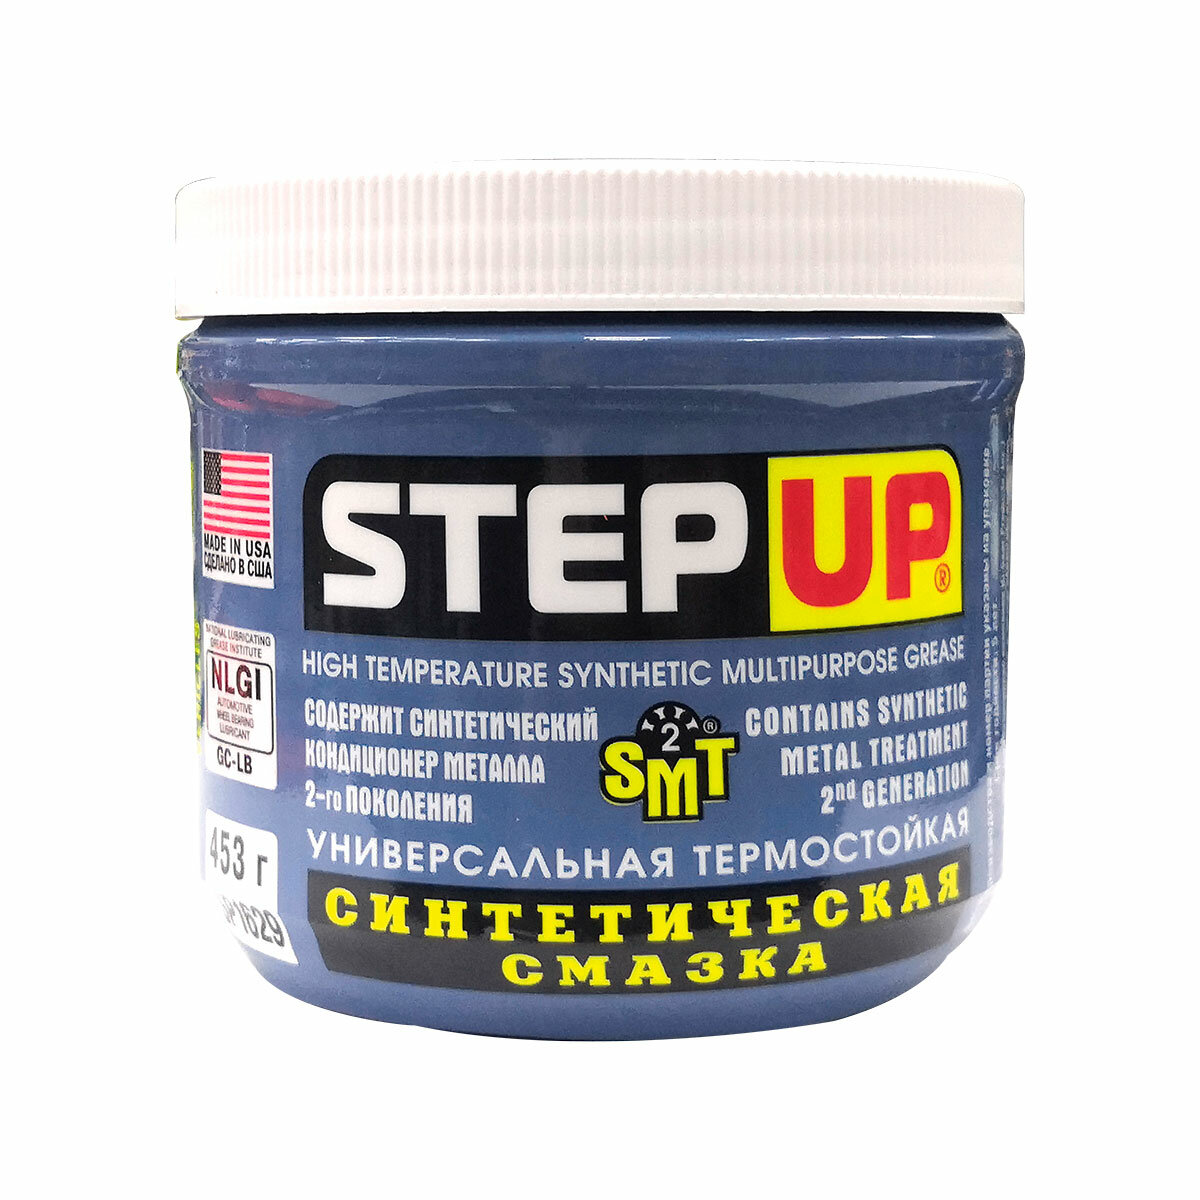 Синтетическая универсальная пластичная смазка StepUp, содержит SMT2, 453 г. SP1629